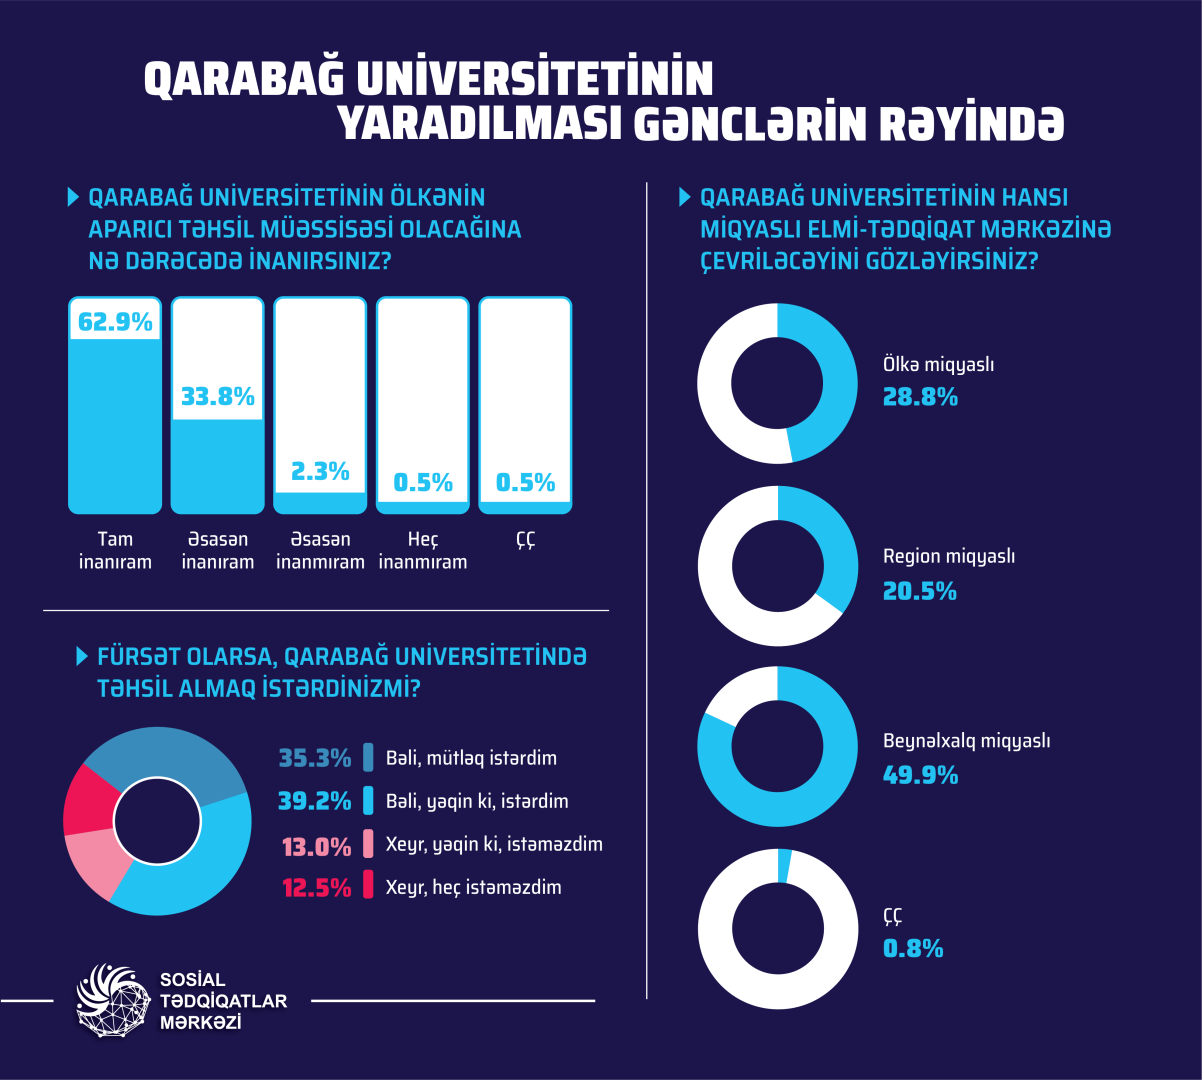 Создание Карабахского университета в отзывах молодежи (ФОТО)